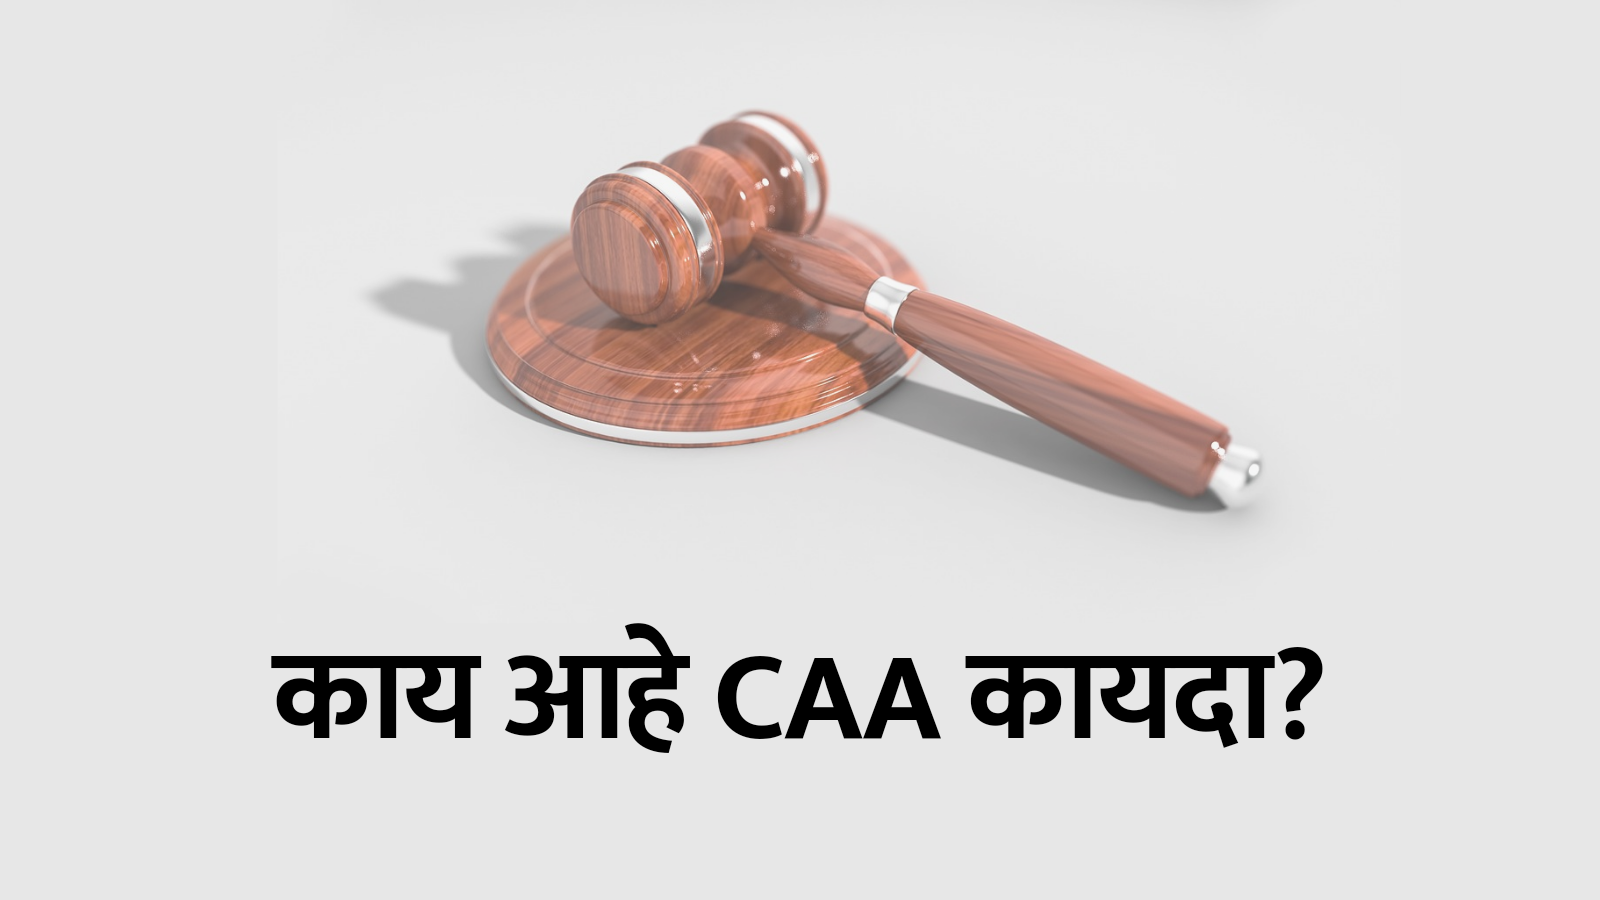 Caa act in marathi, caa full form in marathi, caa information in marathi, caa act, caa कायदा,